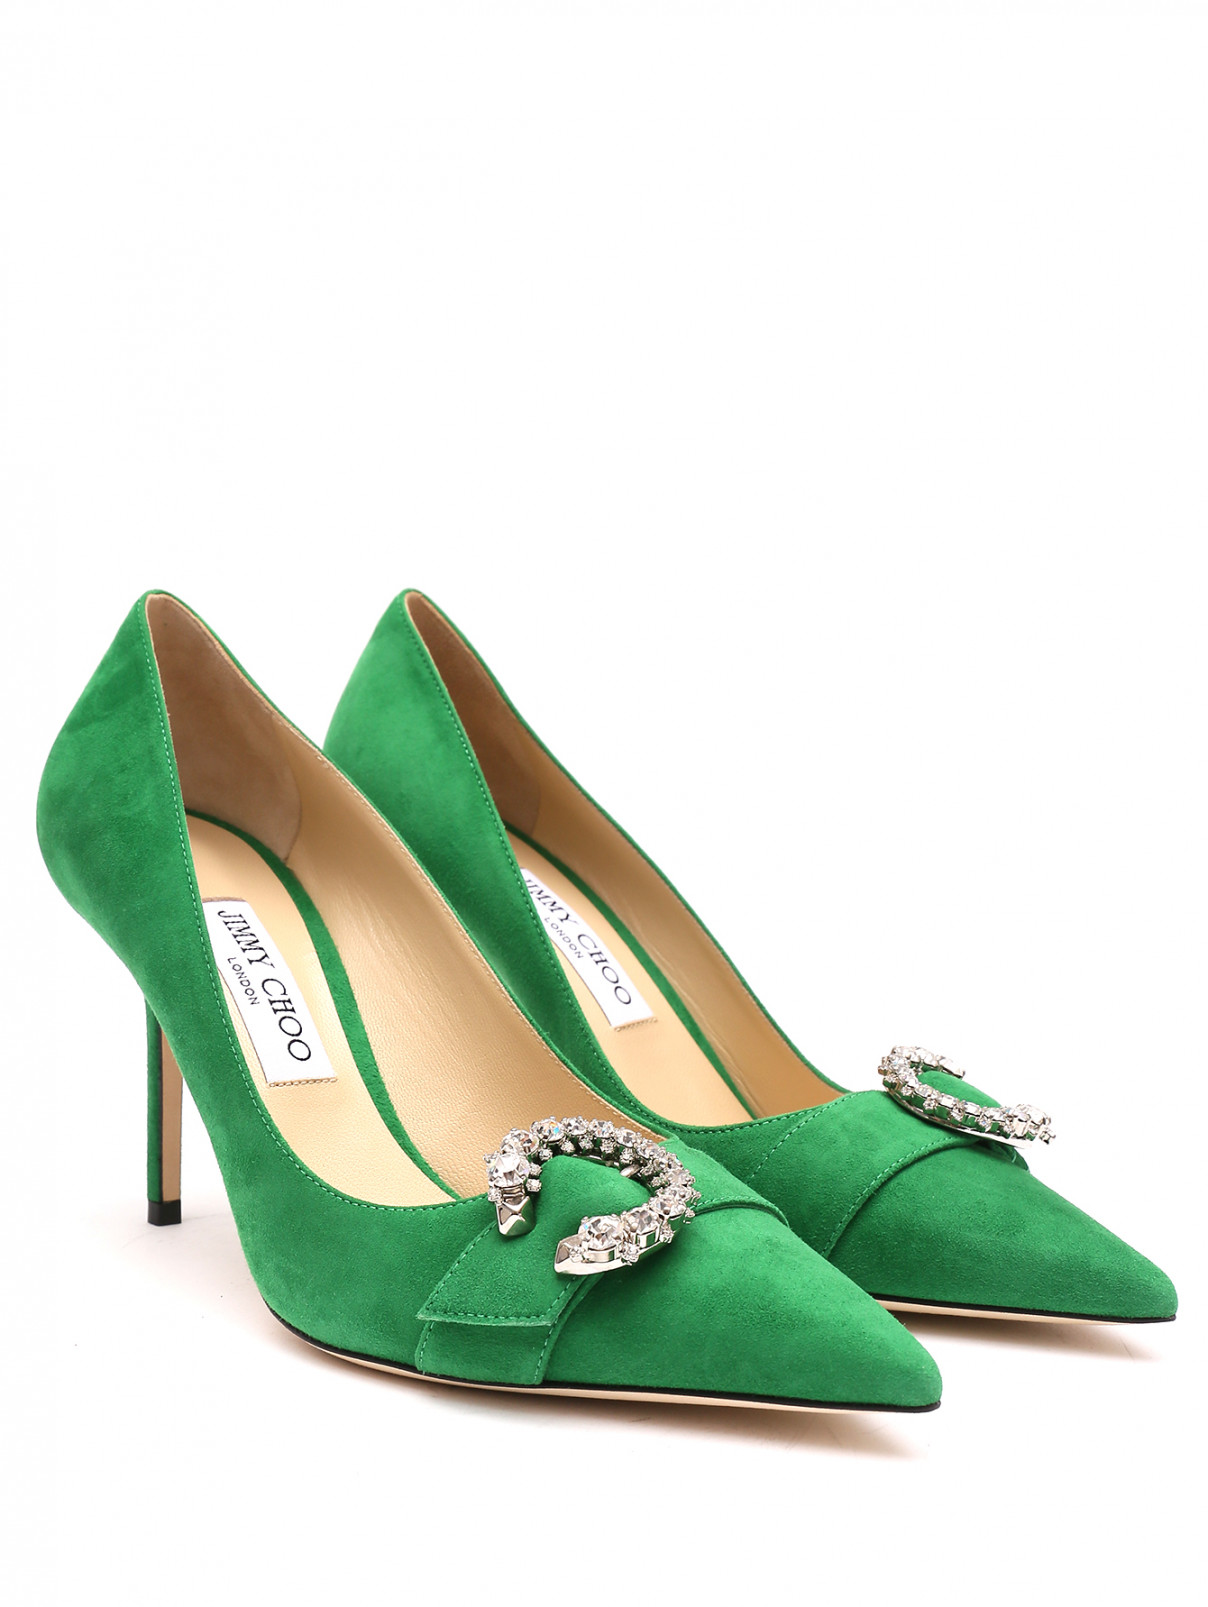 Туфли из замши декорированные кристаллами Jimmy Choo  –  Общий вид  – Цвет:  Зеленый